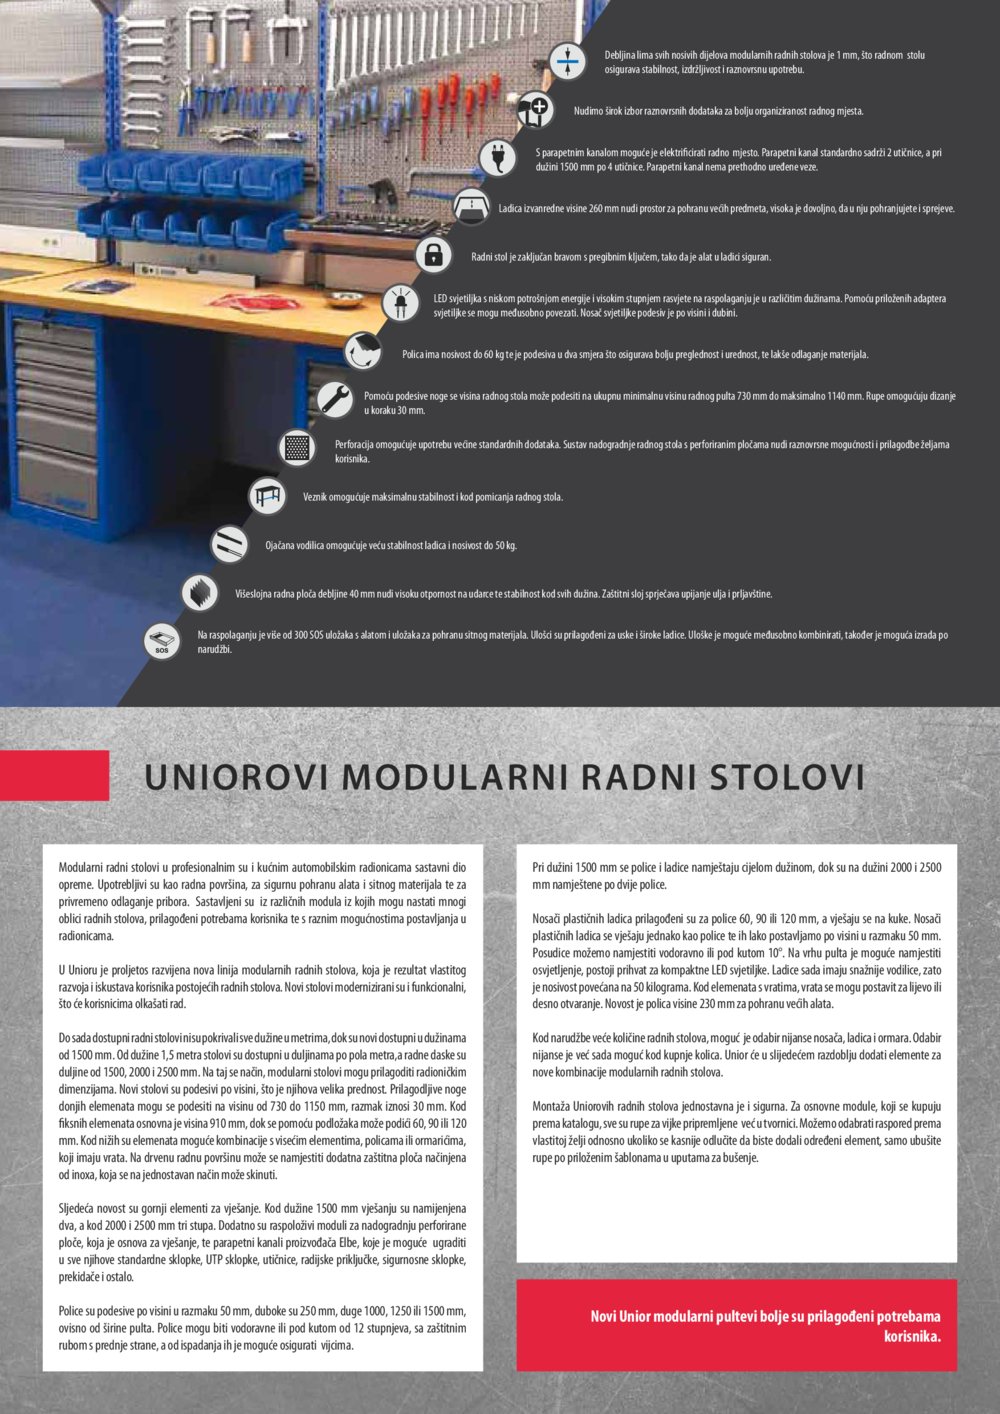 Comet katalog Akcijska ponuda modularnih radnih stolova 01.04.-31.12.2017. 